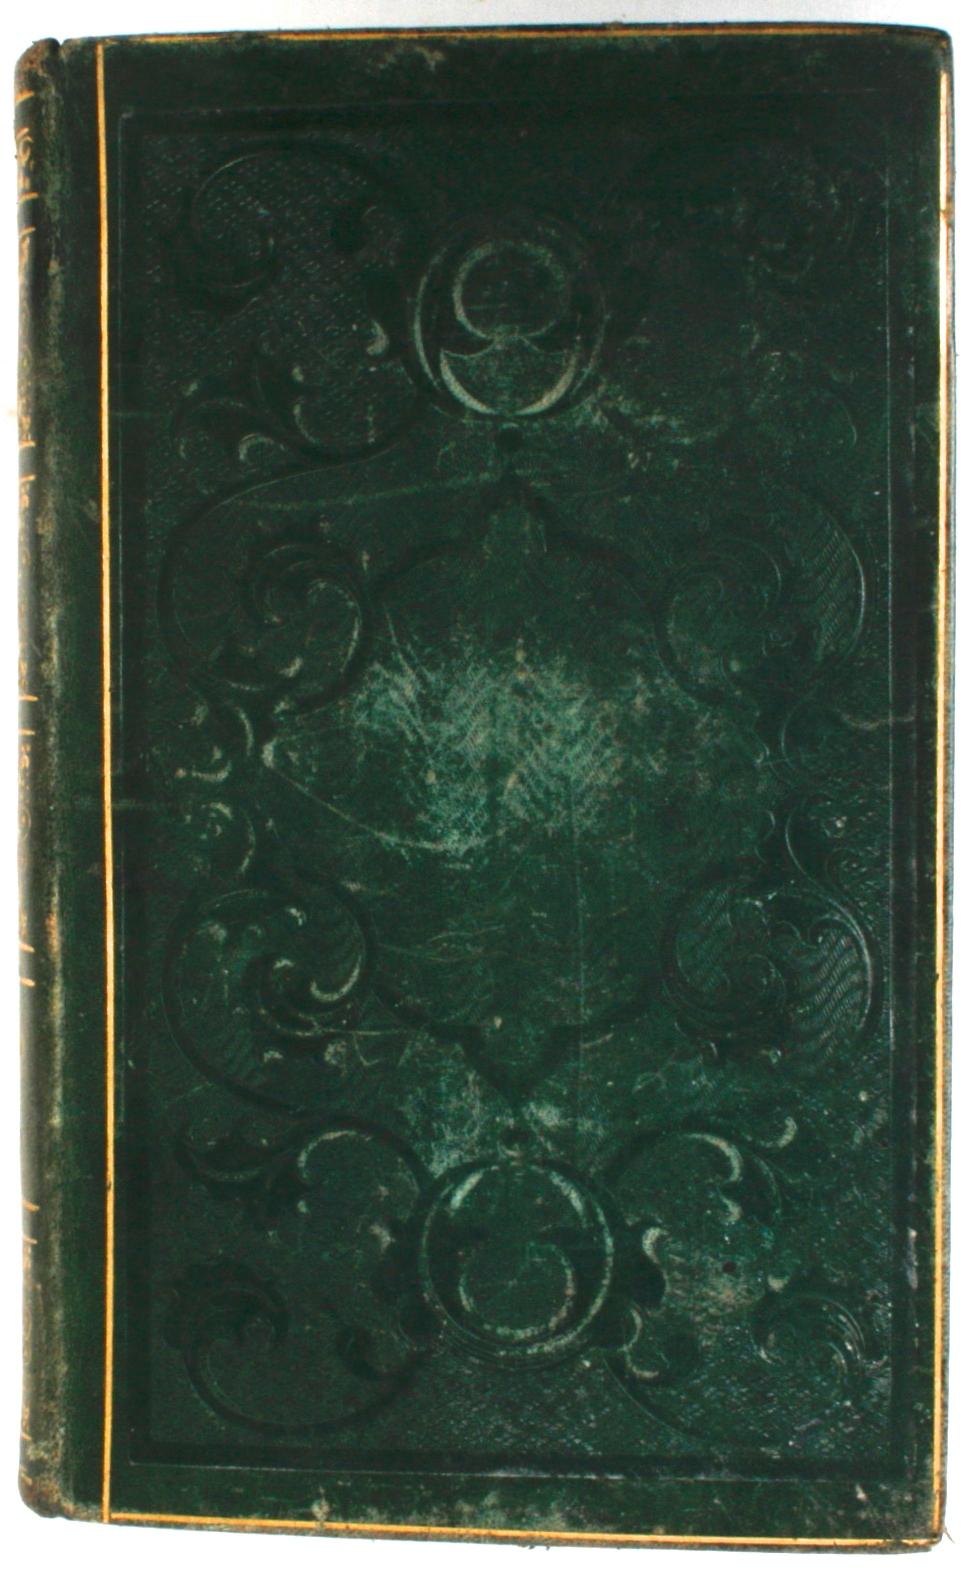 Paper Oraisons Funèbres de Mascaron, Bourdaloue, Massillon, et Autres Orateurs, 1837